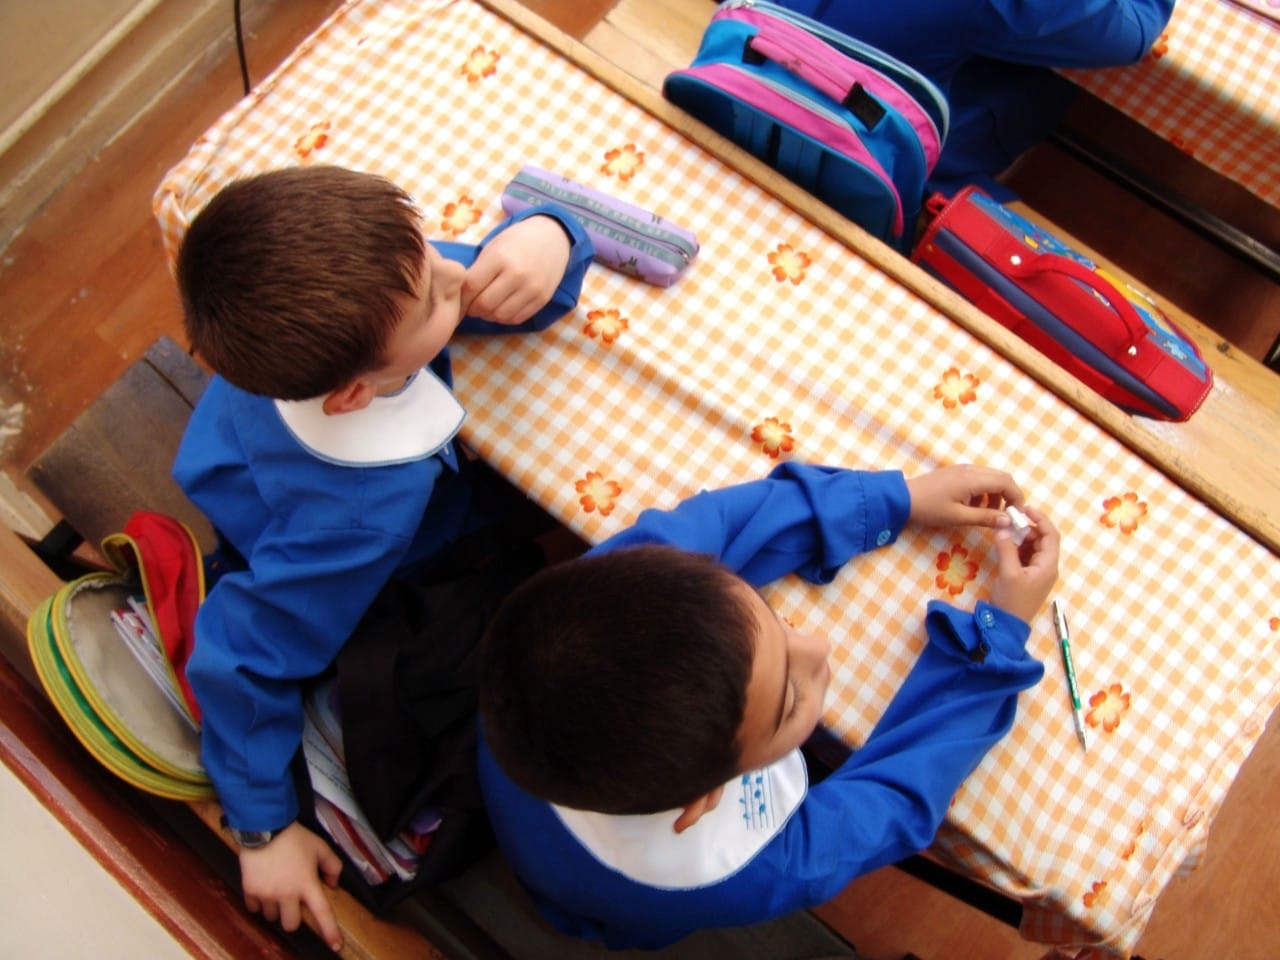 Stock image of school children in classroom.